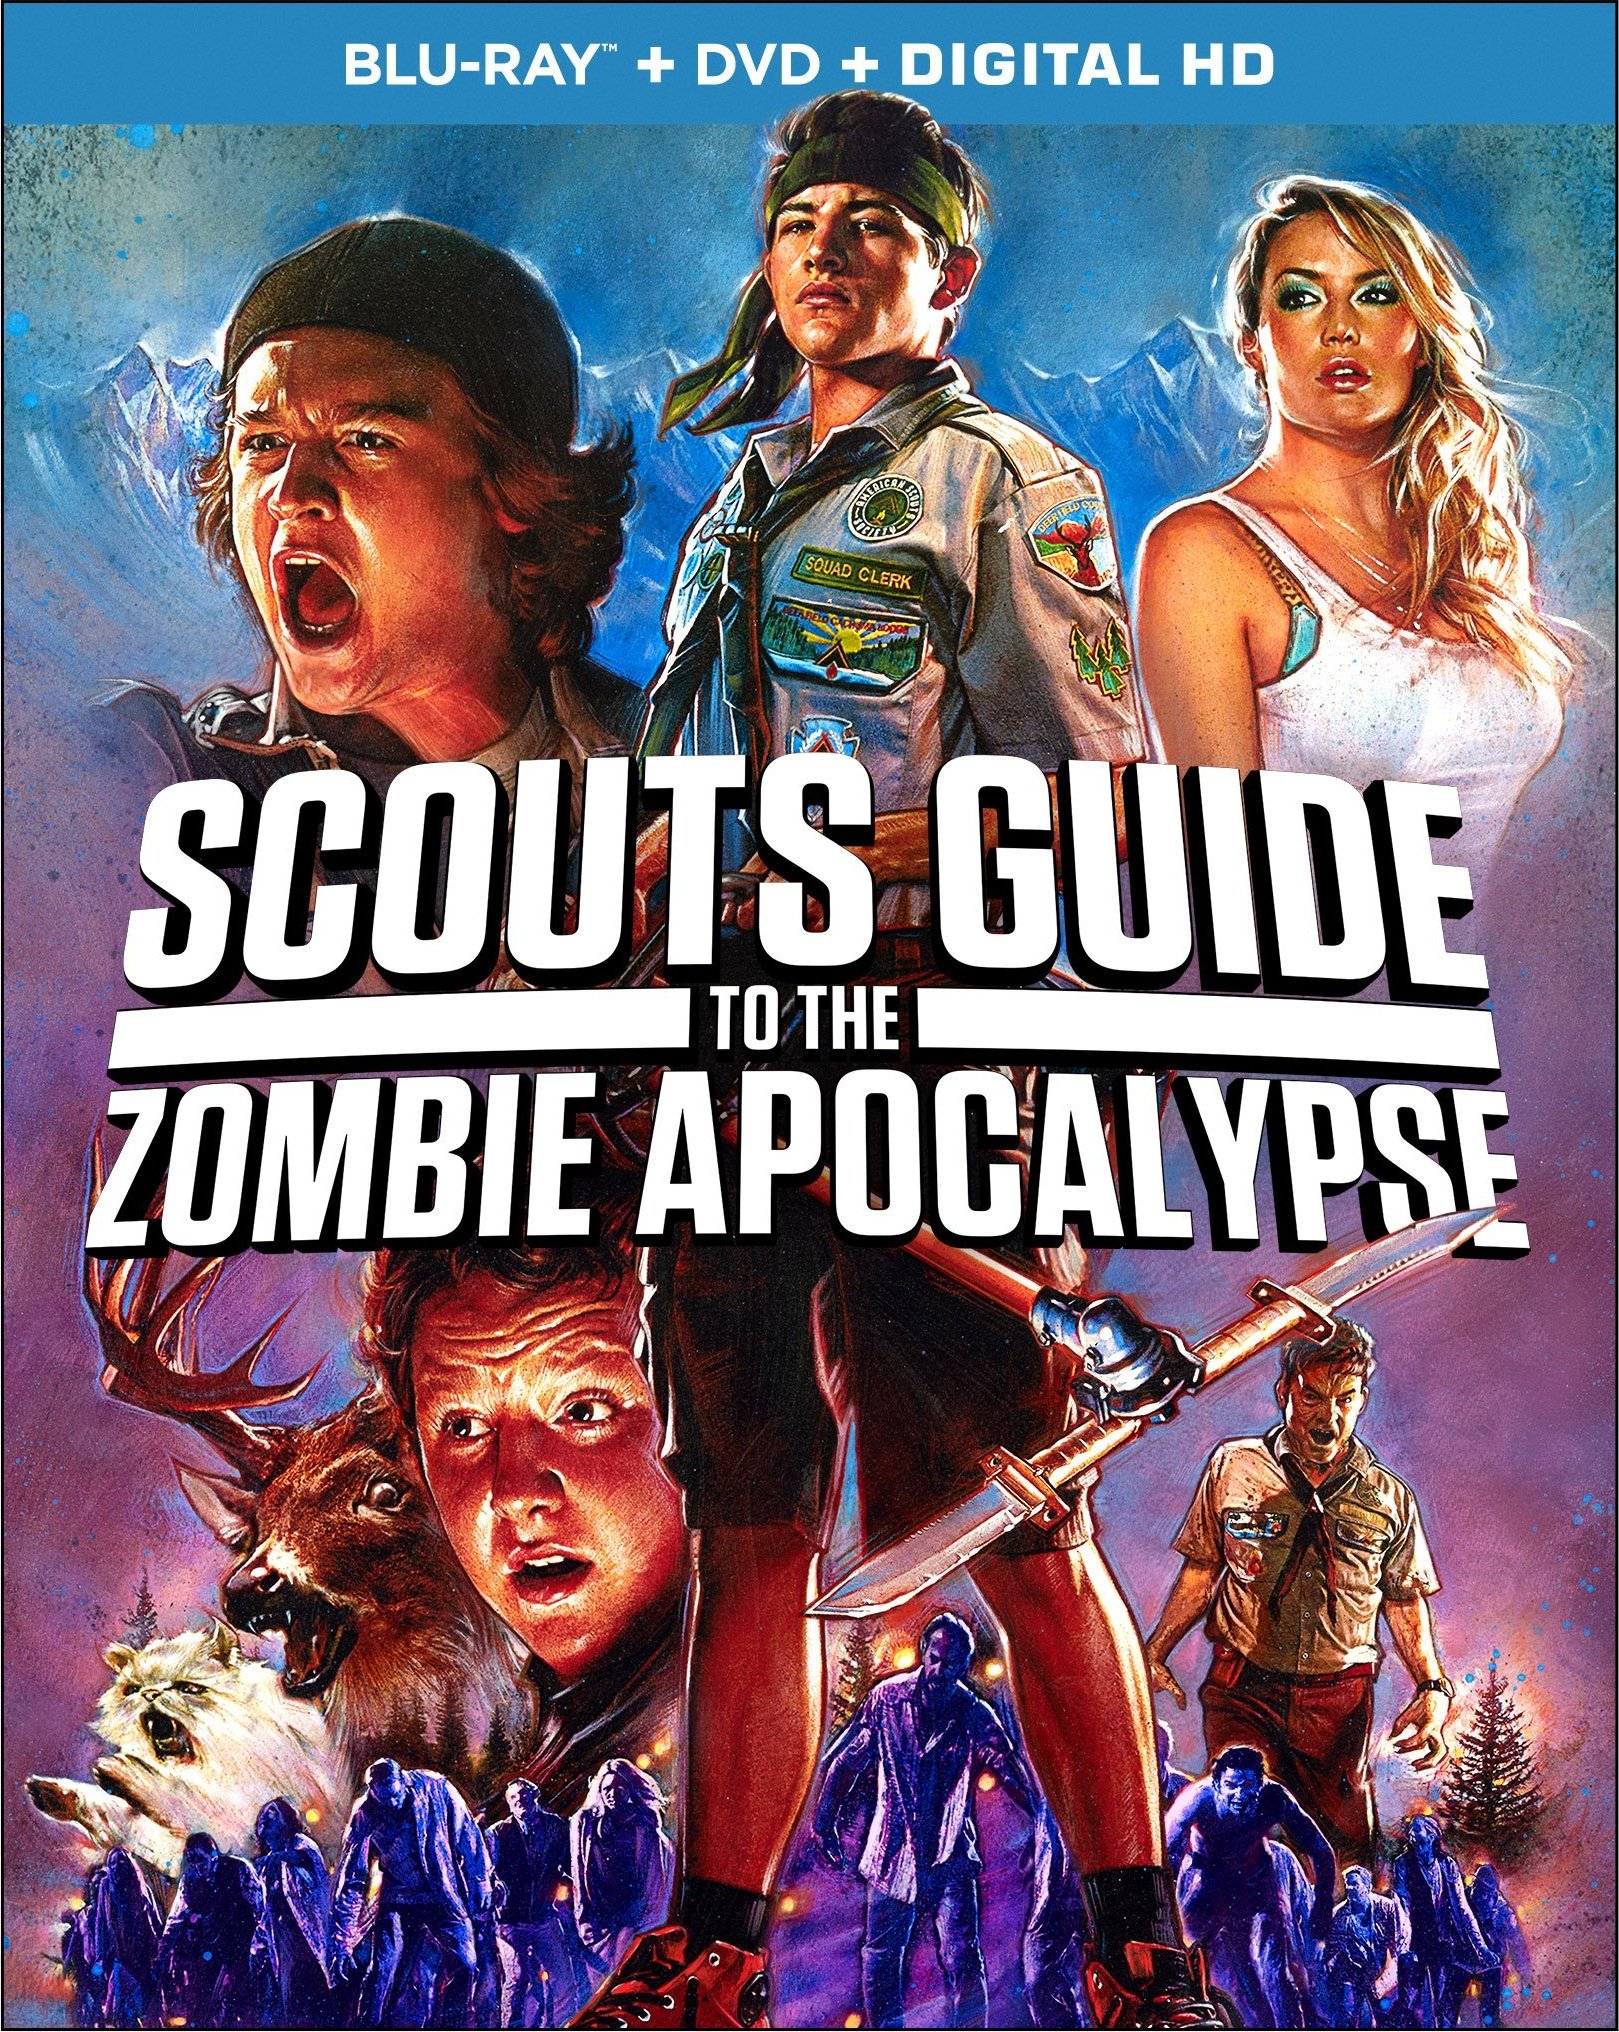 童军手册之僵尸启示录 【DIY简繁+简繁英双语字幕】*亮点自寻* Scouts Guide to the Zombie Apocalypse 2015 BluRay 1080p AVC DTS-HD MA5.1-lingfriendly@OurBits    [28.98 GB ]